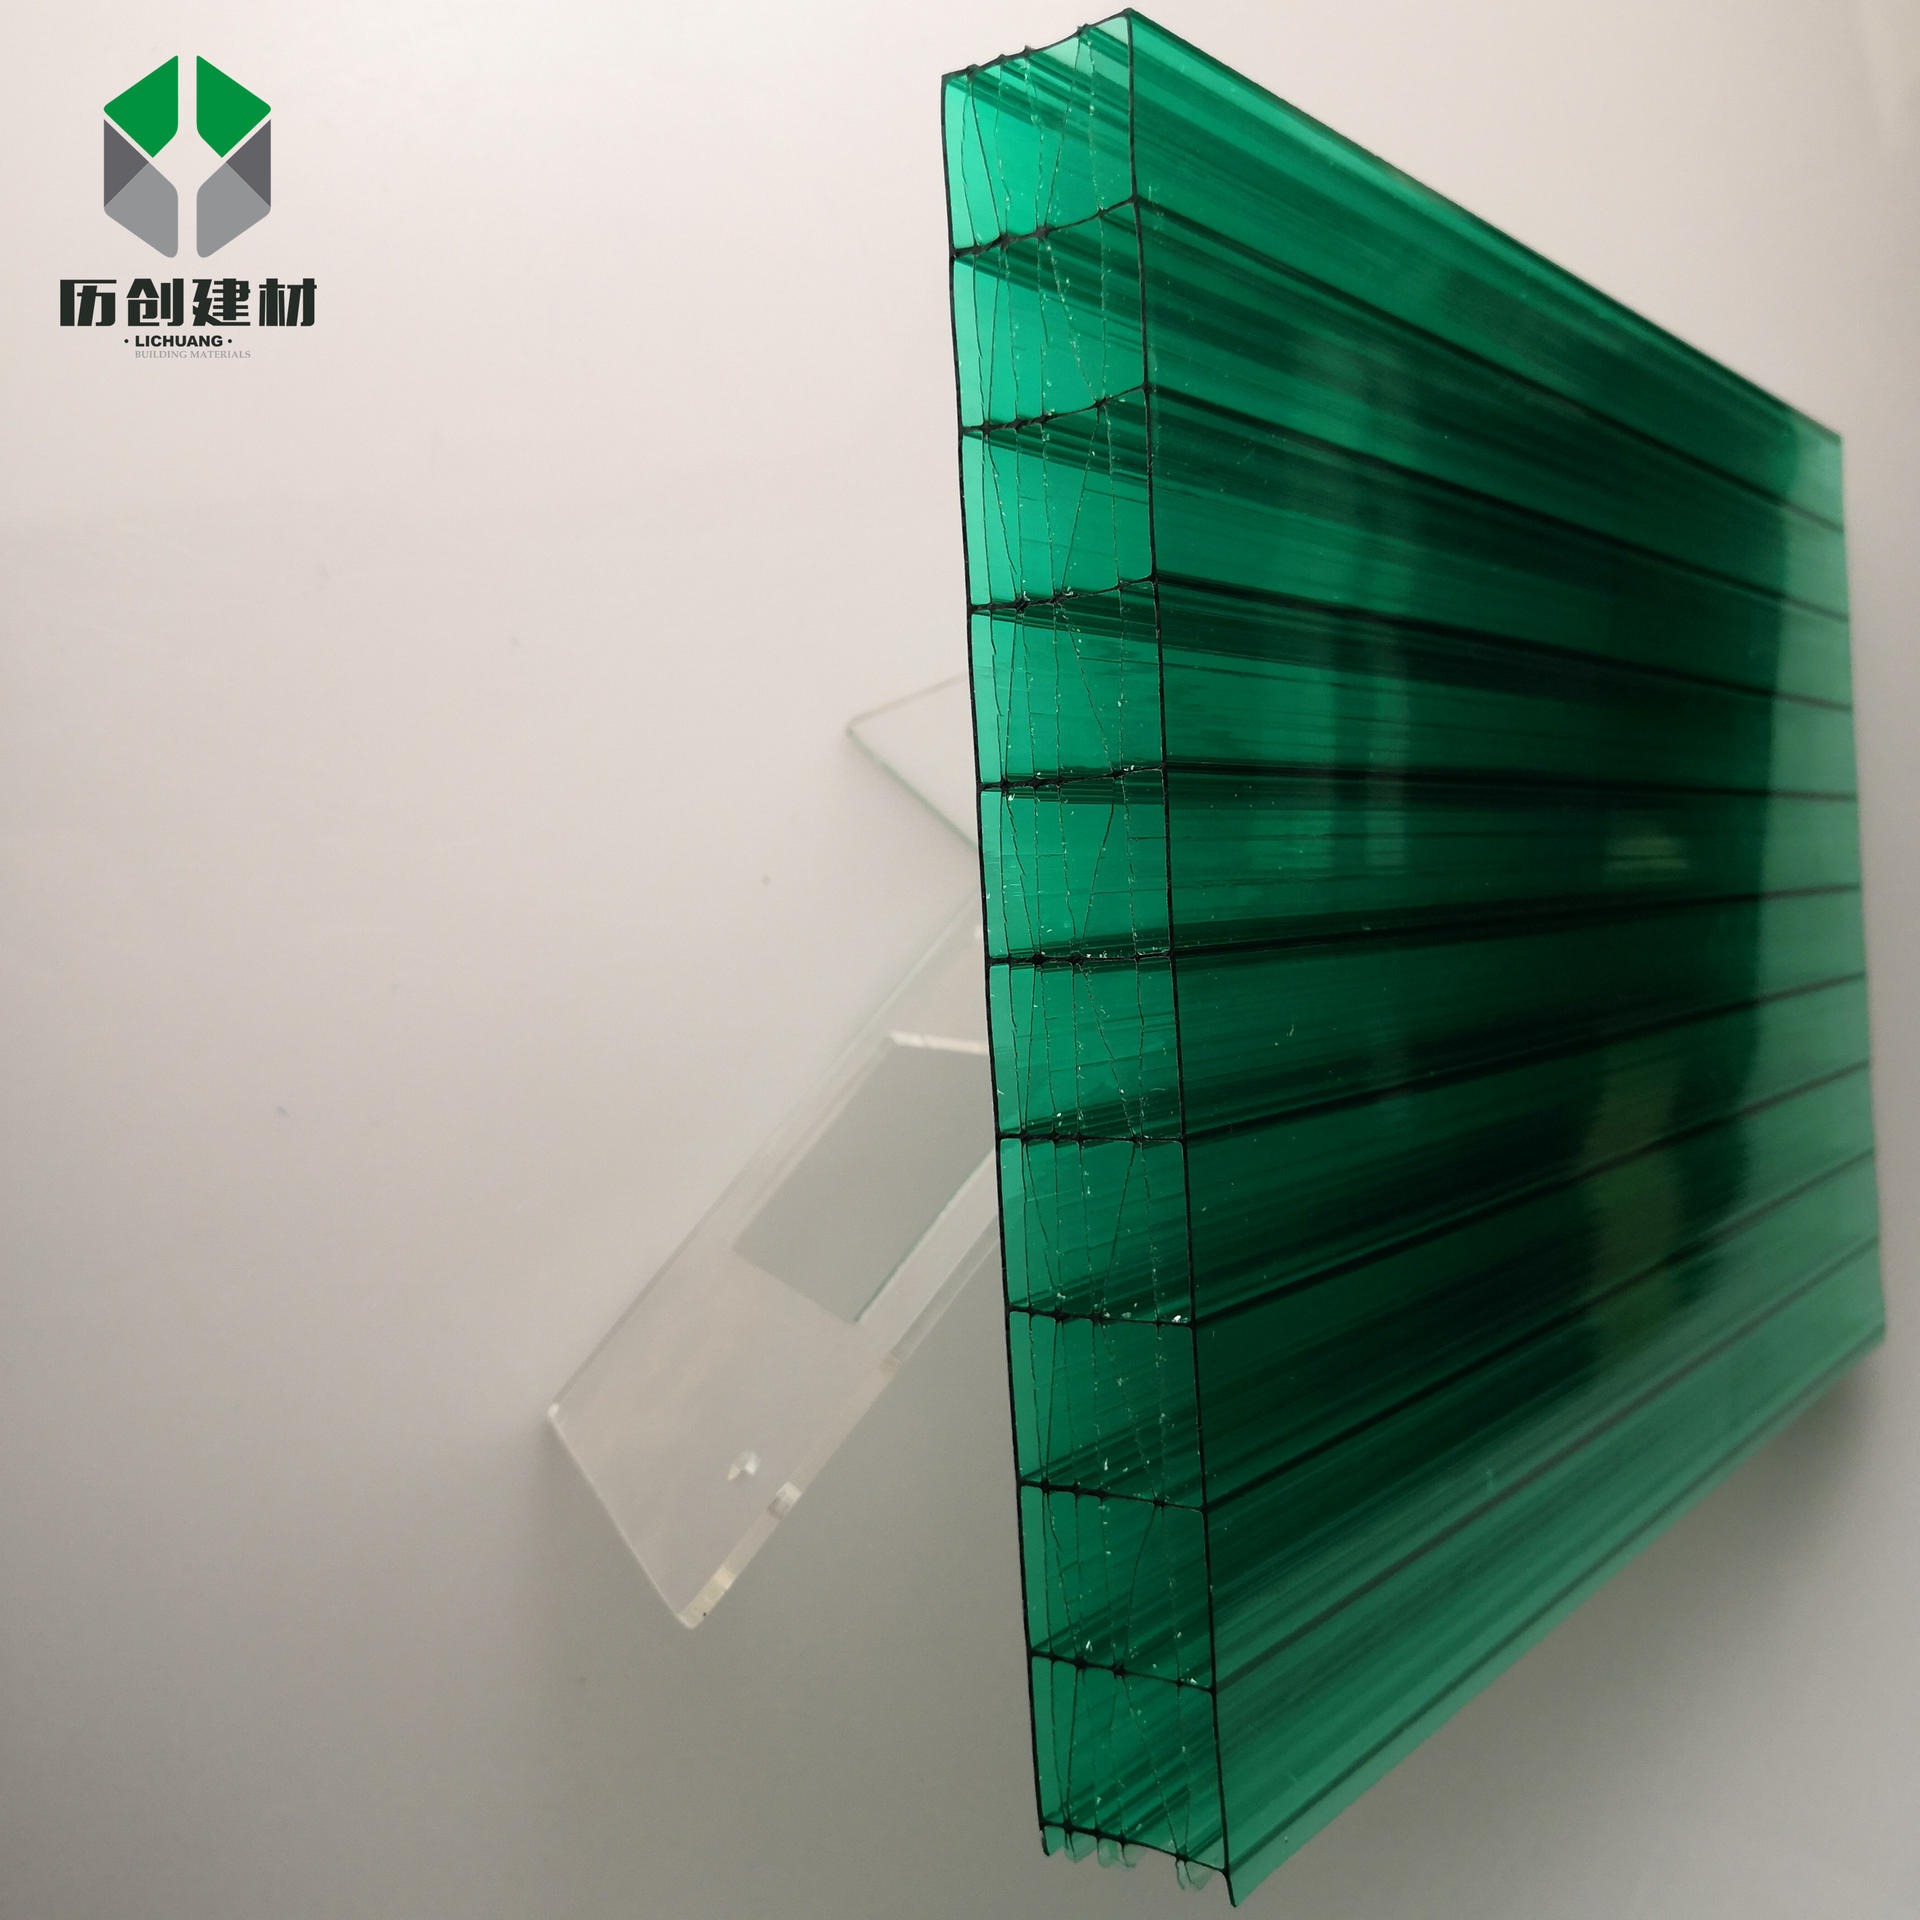 大棚透明阳光板 PC四层米字格板10mm工程中空板聚碳酸酯采光阳光板历创定制